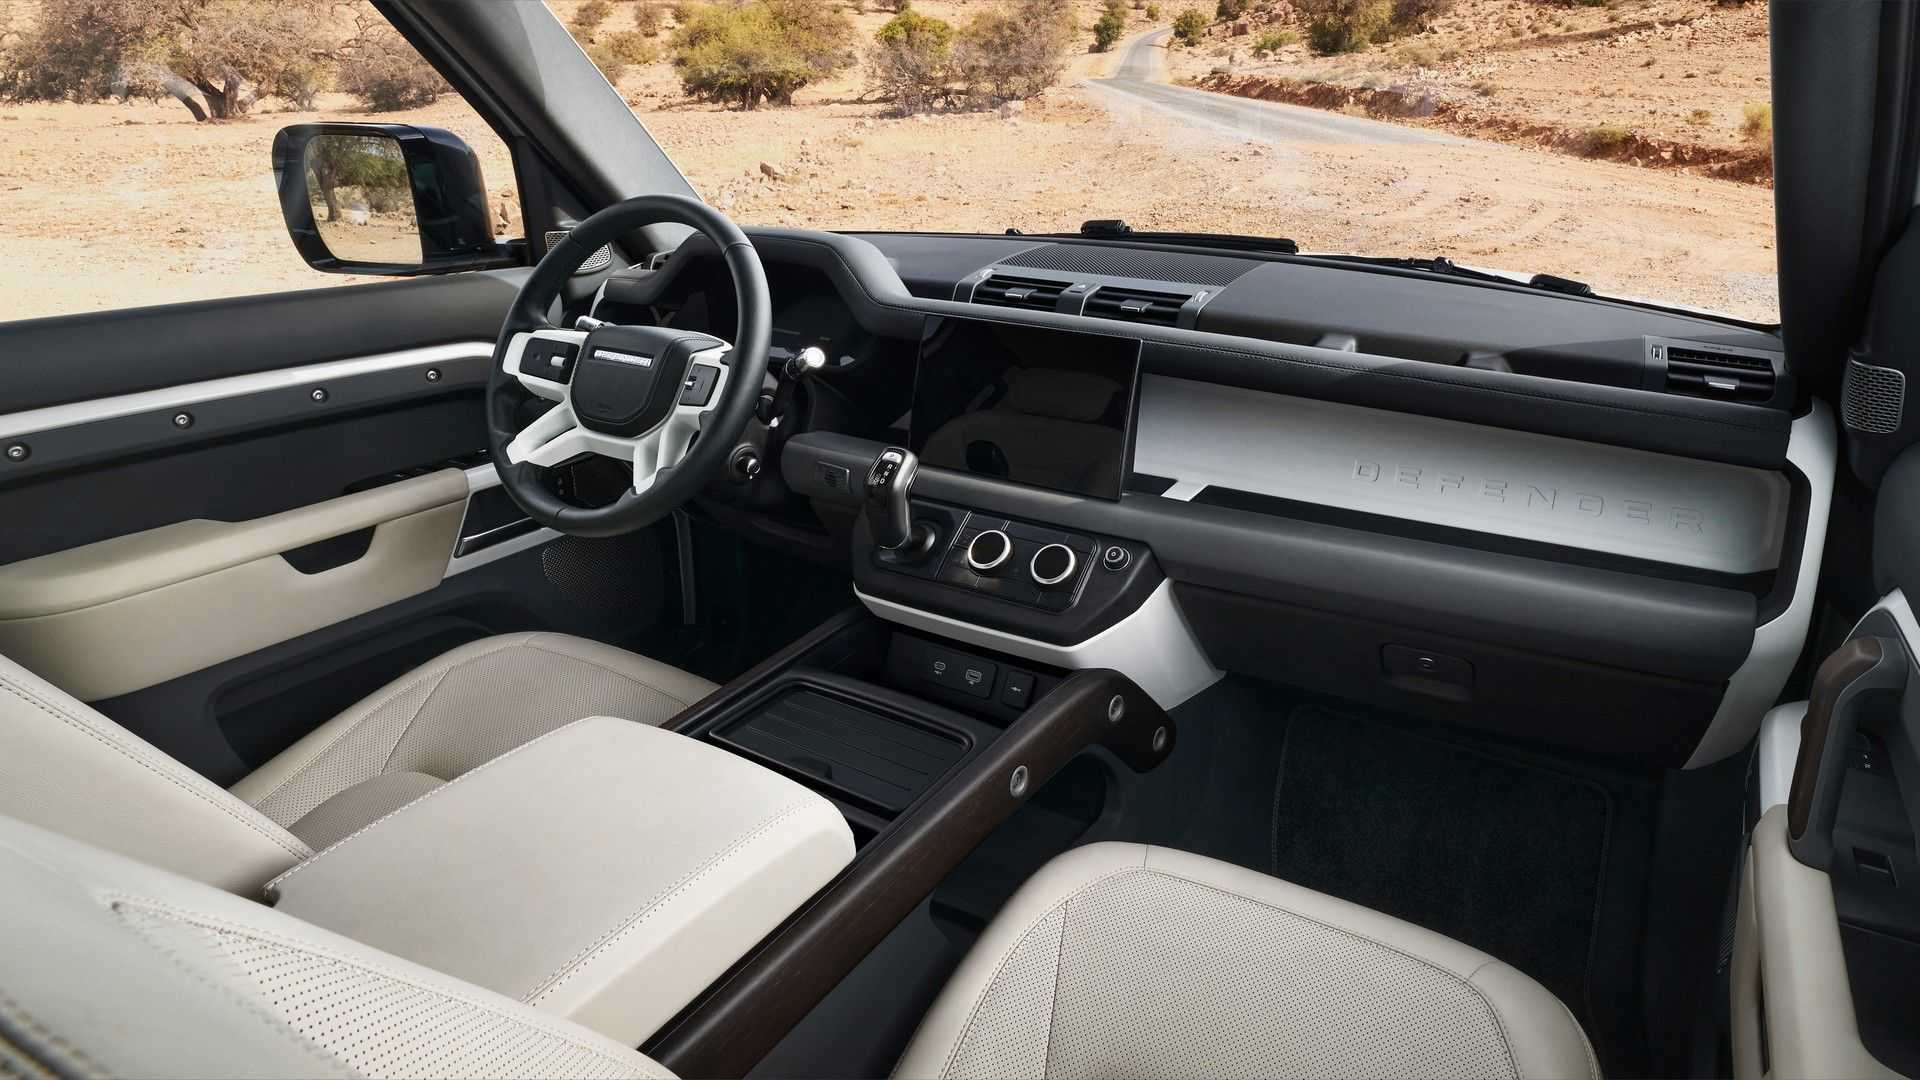 Defender bán quá chạy, Land Rover phải tăng ca sản xuất - Ảnh 3.